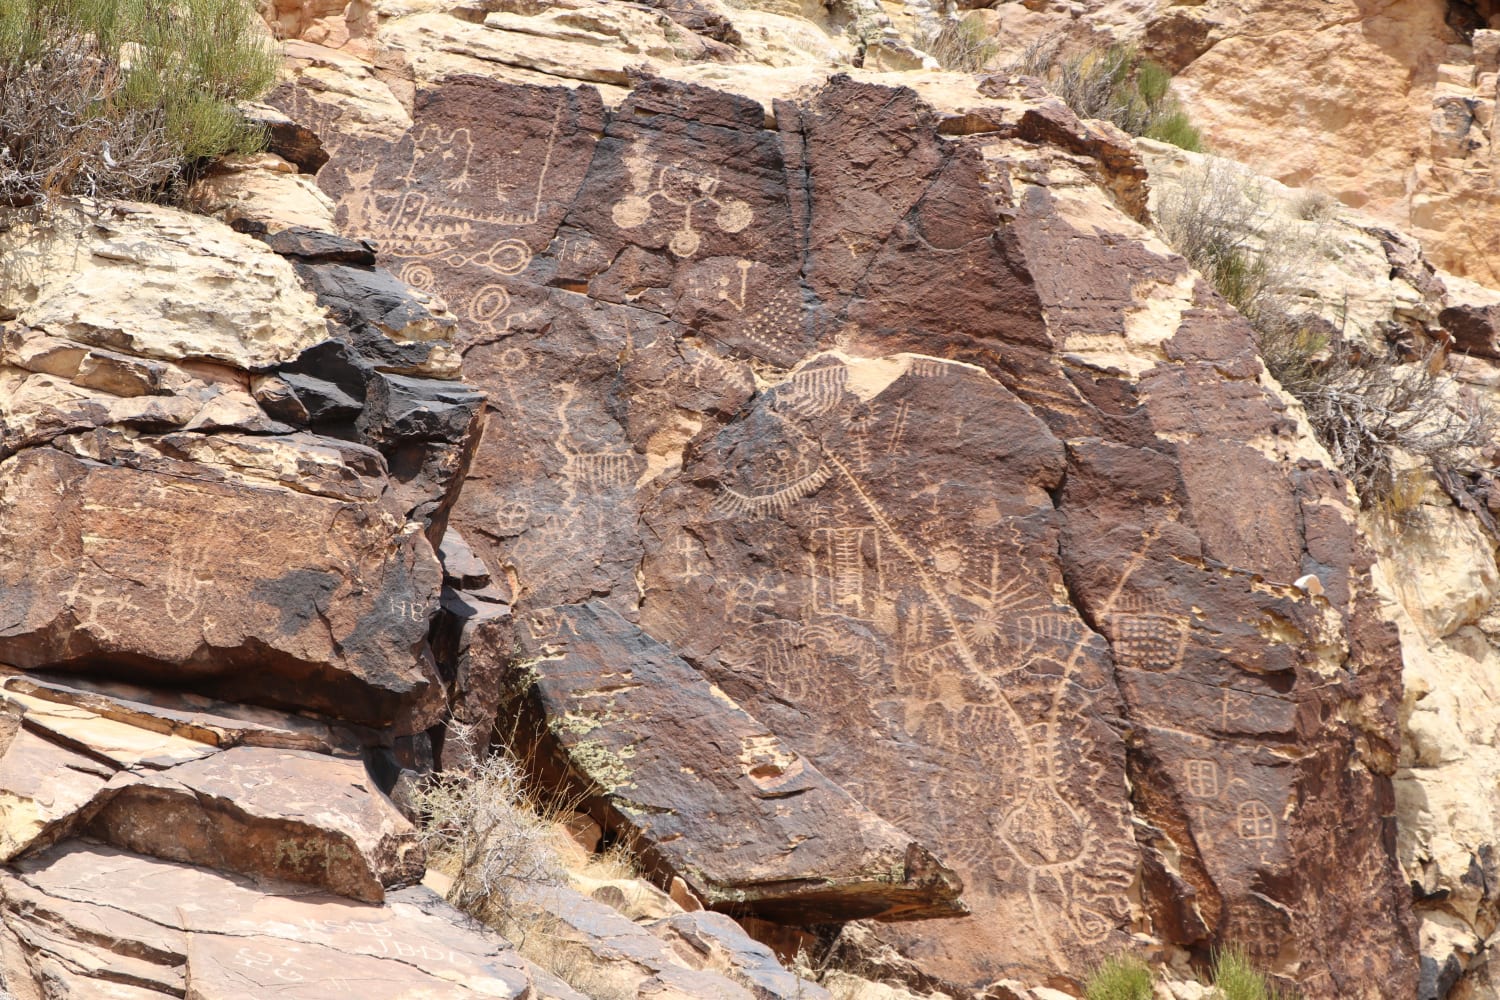 Parowan Gap petroglyphs in Utah carved by Native Americans.